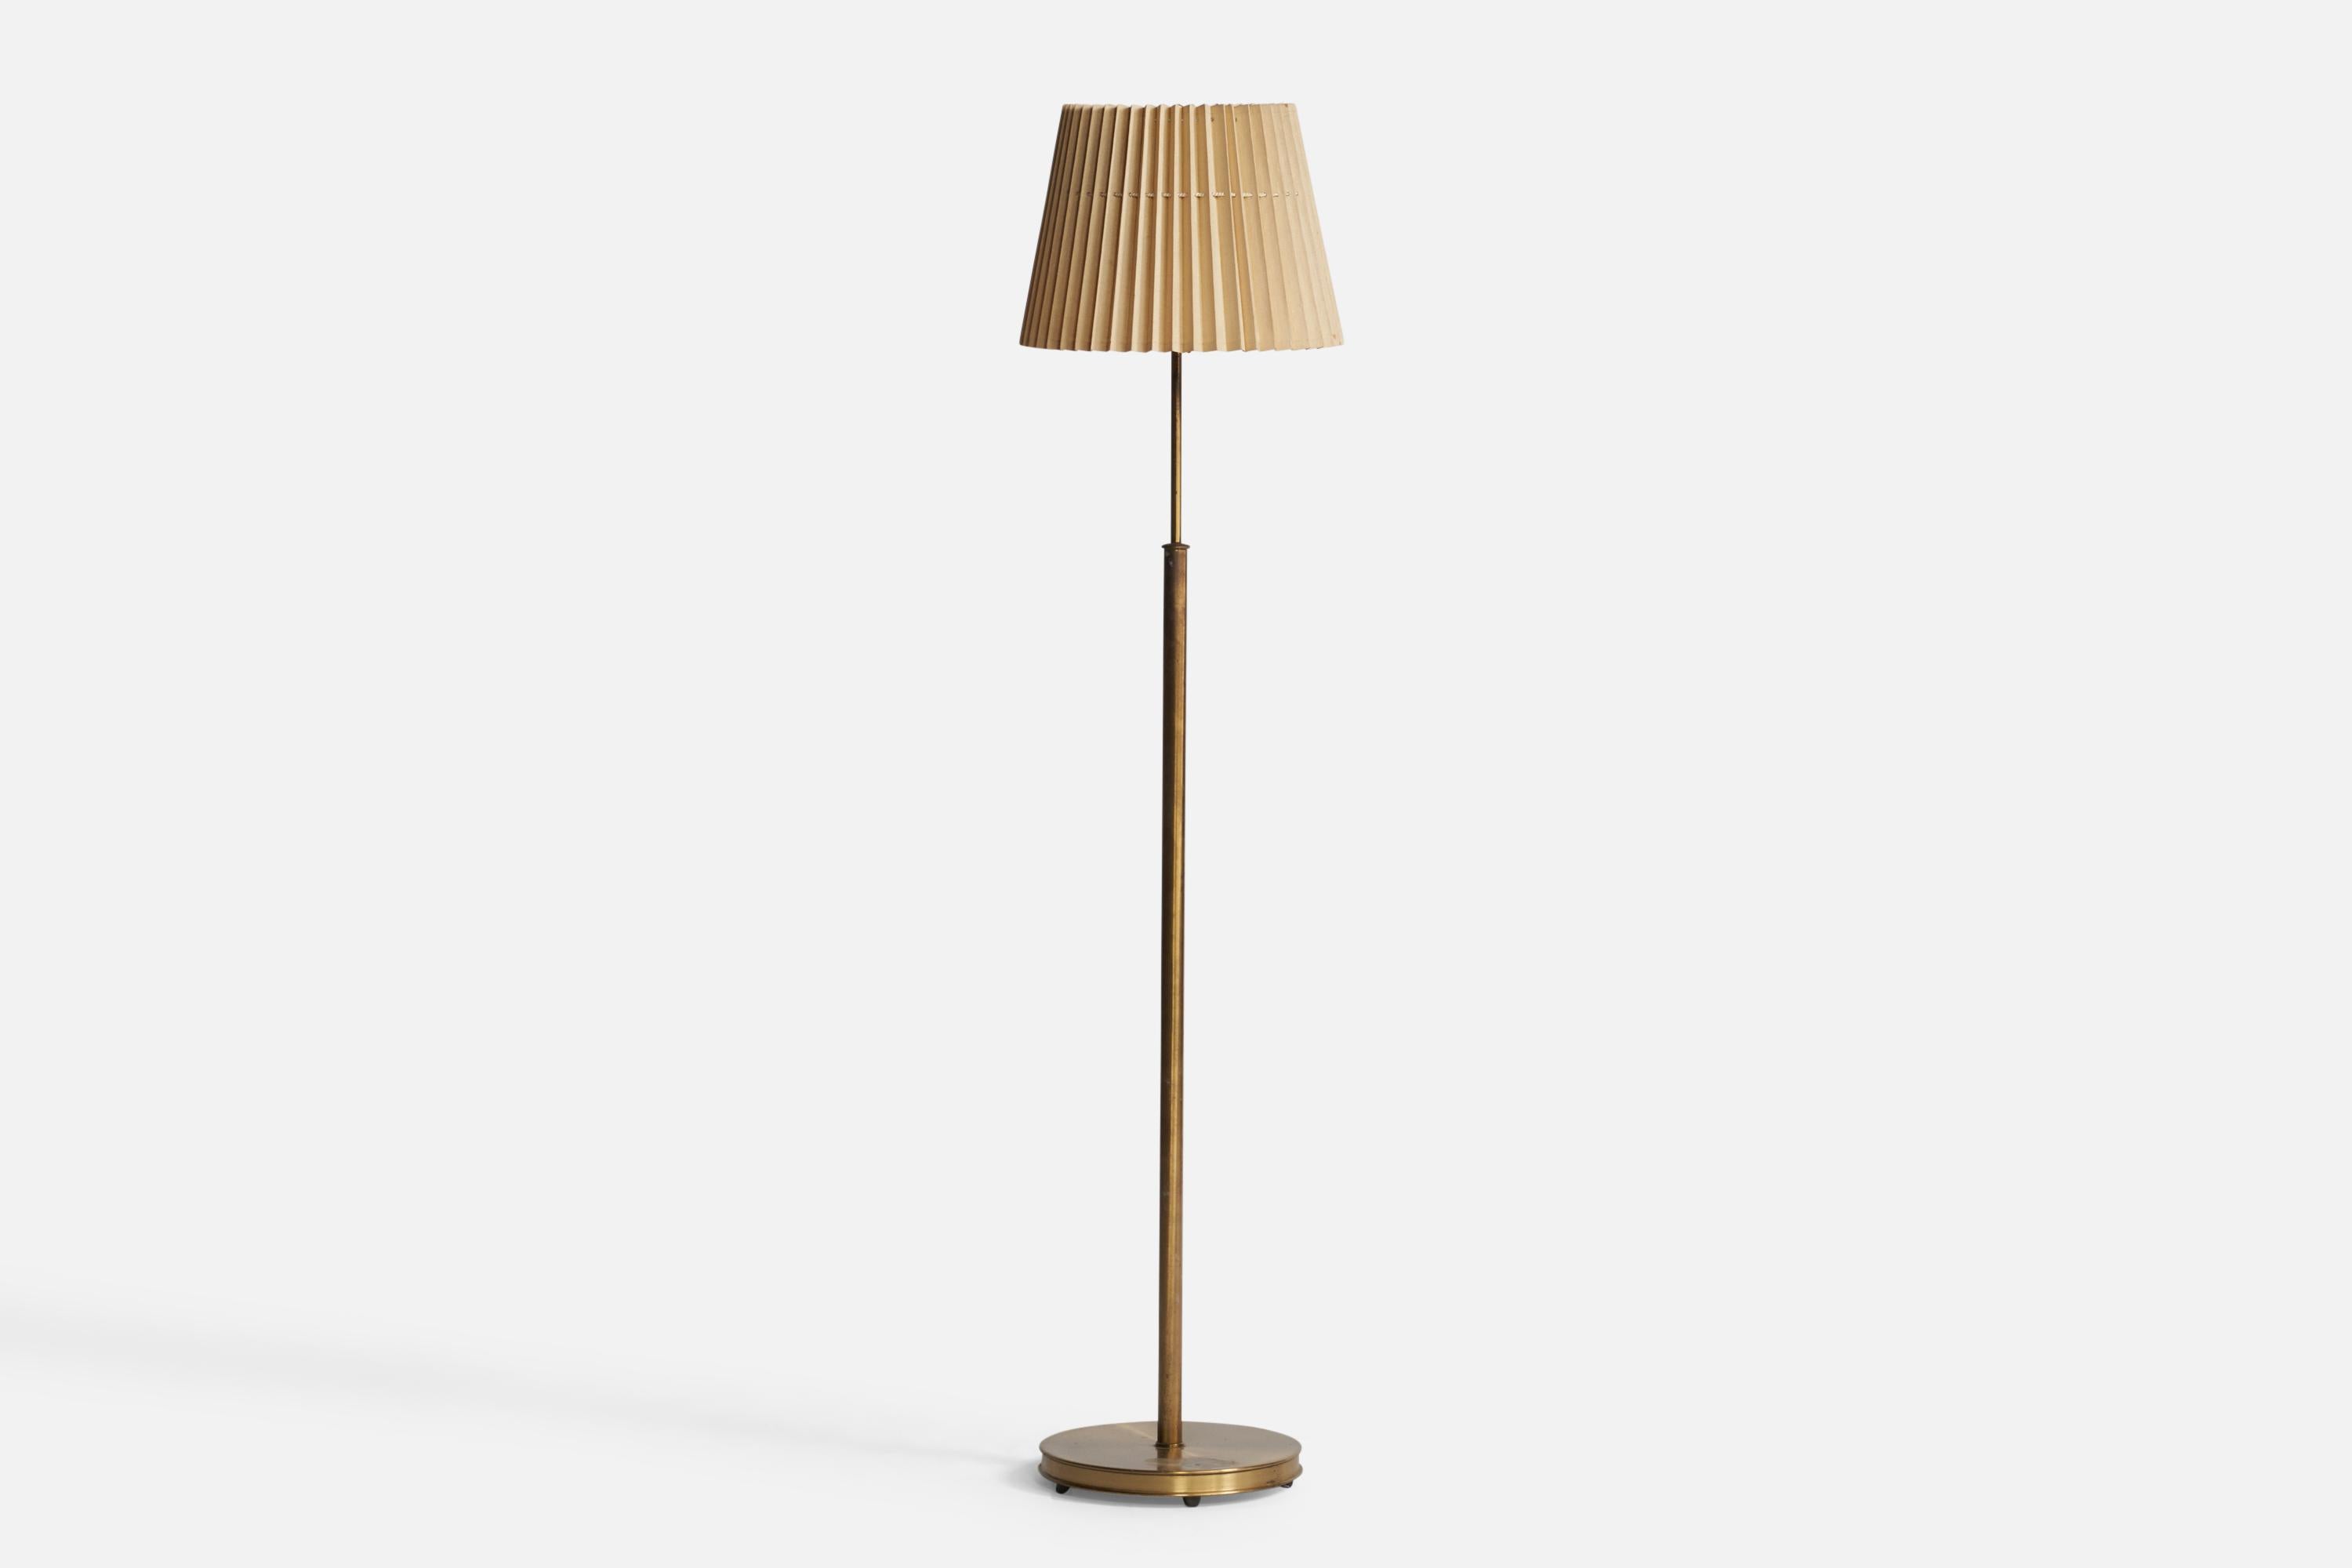 Stehlampe aus Messing und beigem Papier, entworfen und hergestellt in Schweden, ca. 1940er Jahre.

Gesamtabmessungen (Zoll): 60,5